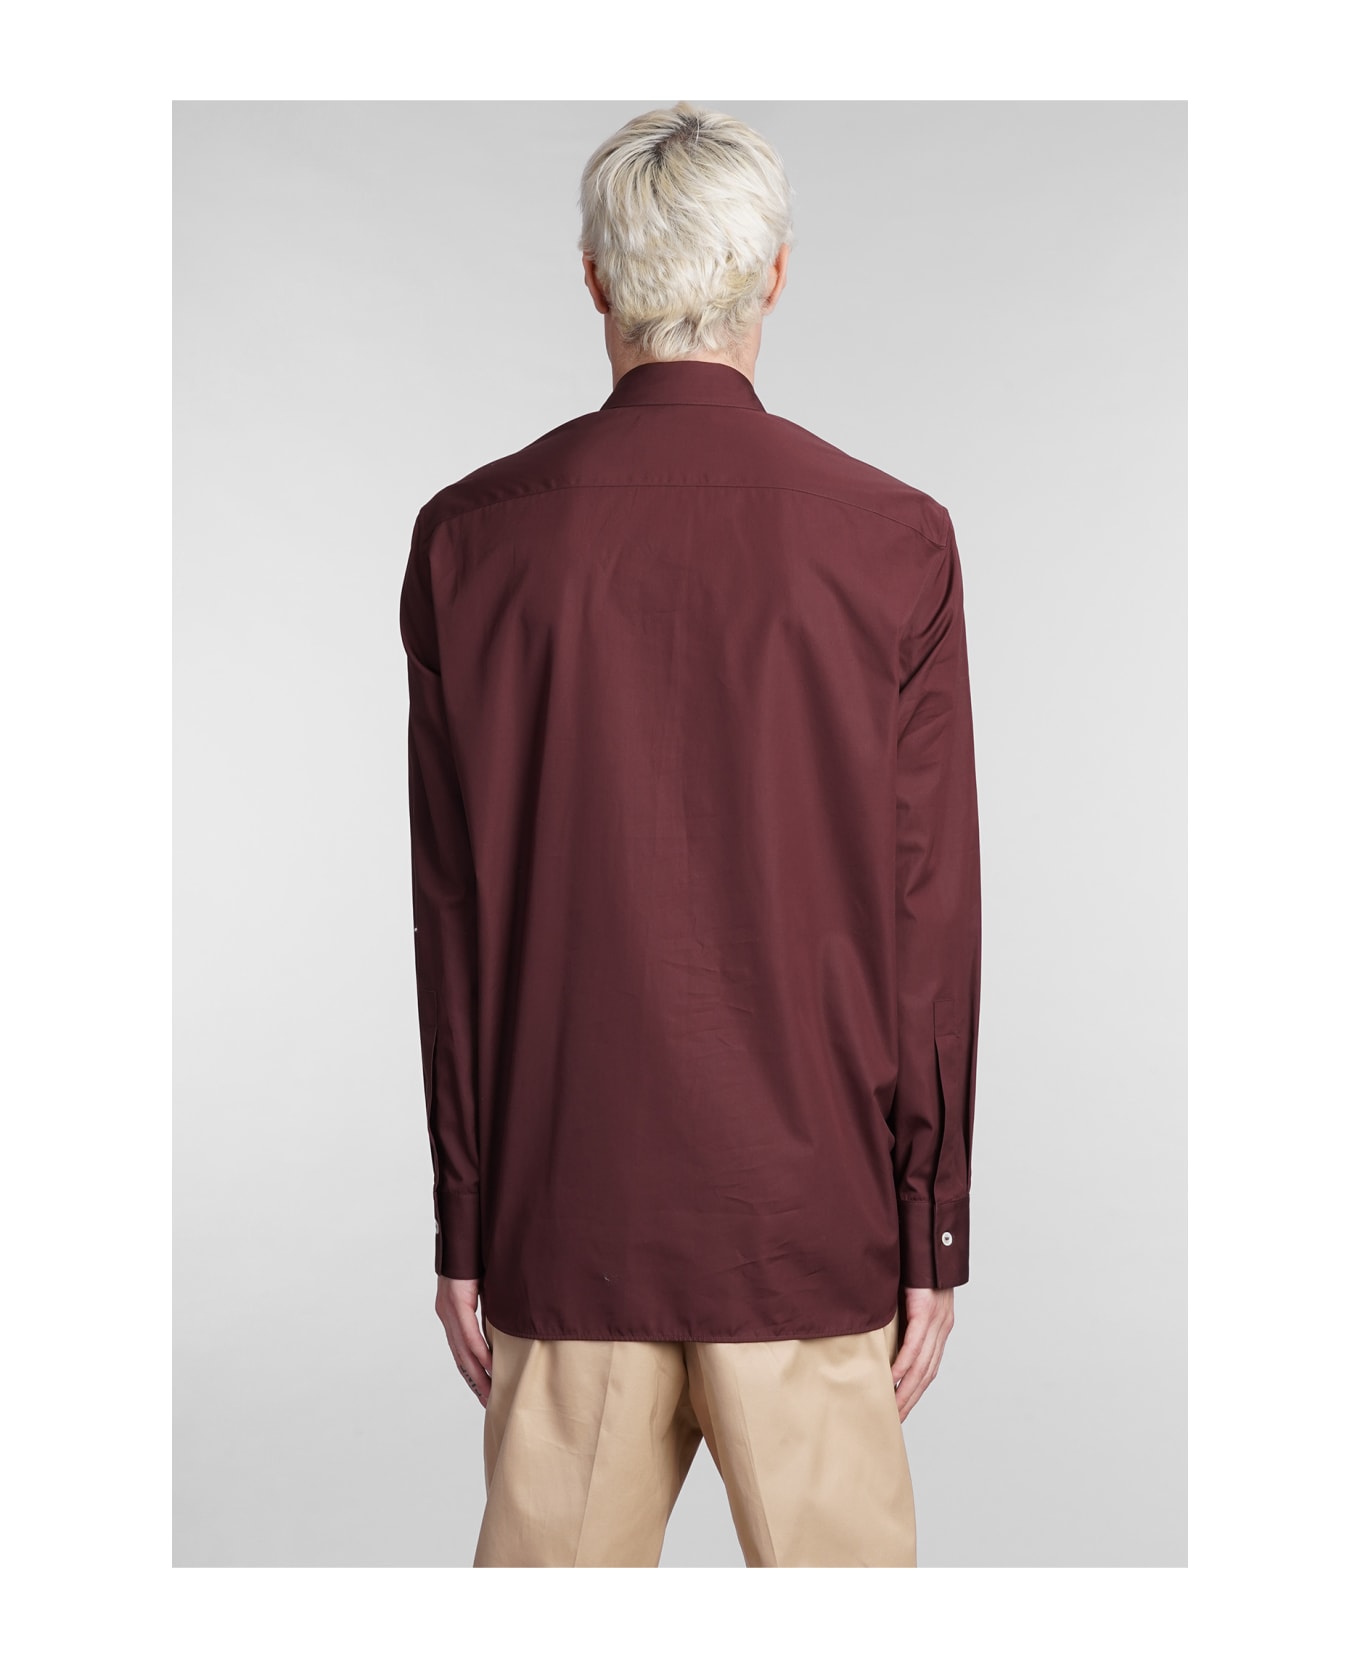 Jil Sander Shirt In Bordeaux Cotton - bordeaux